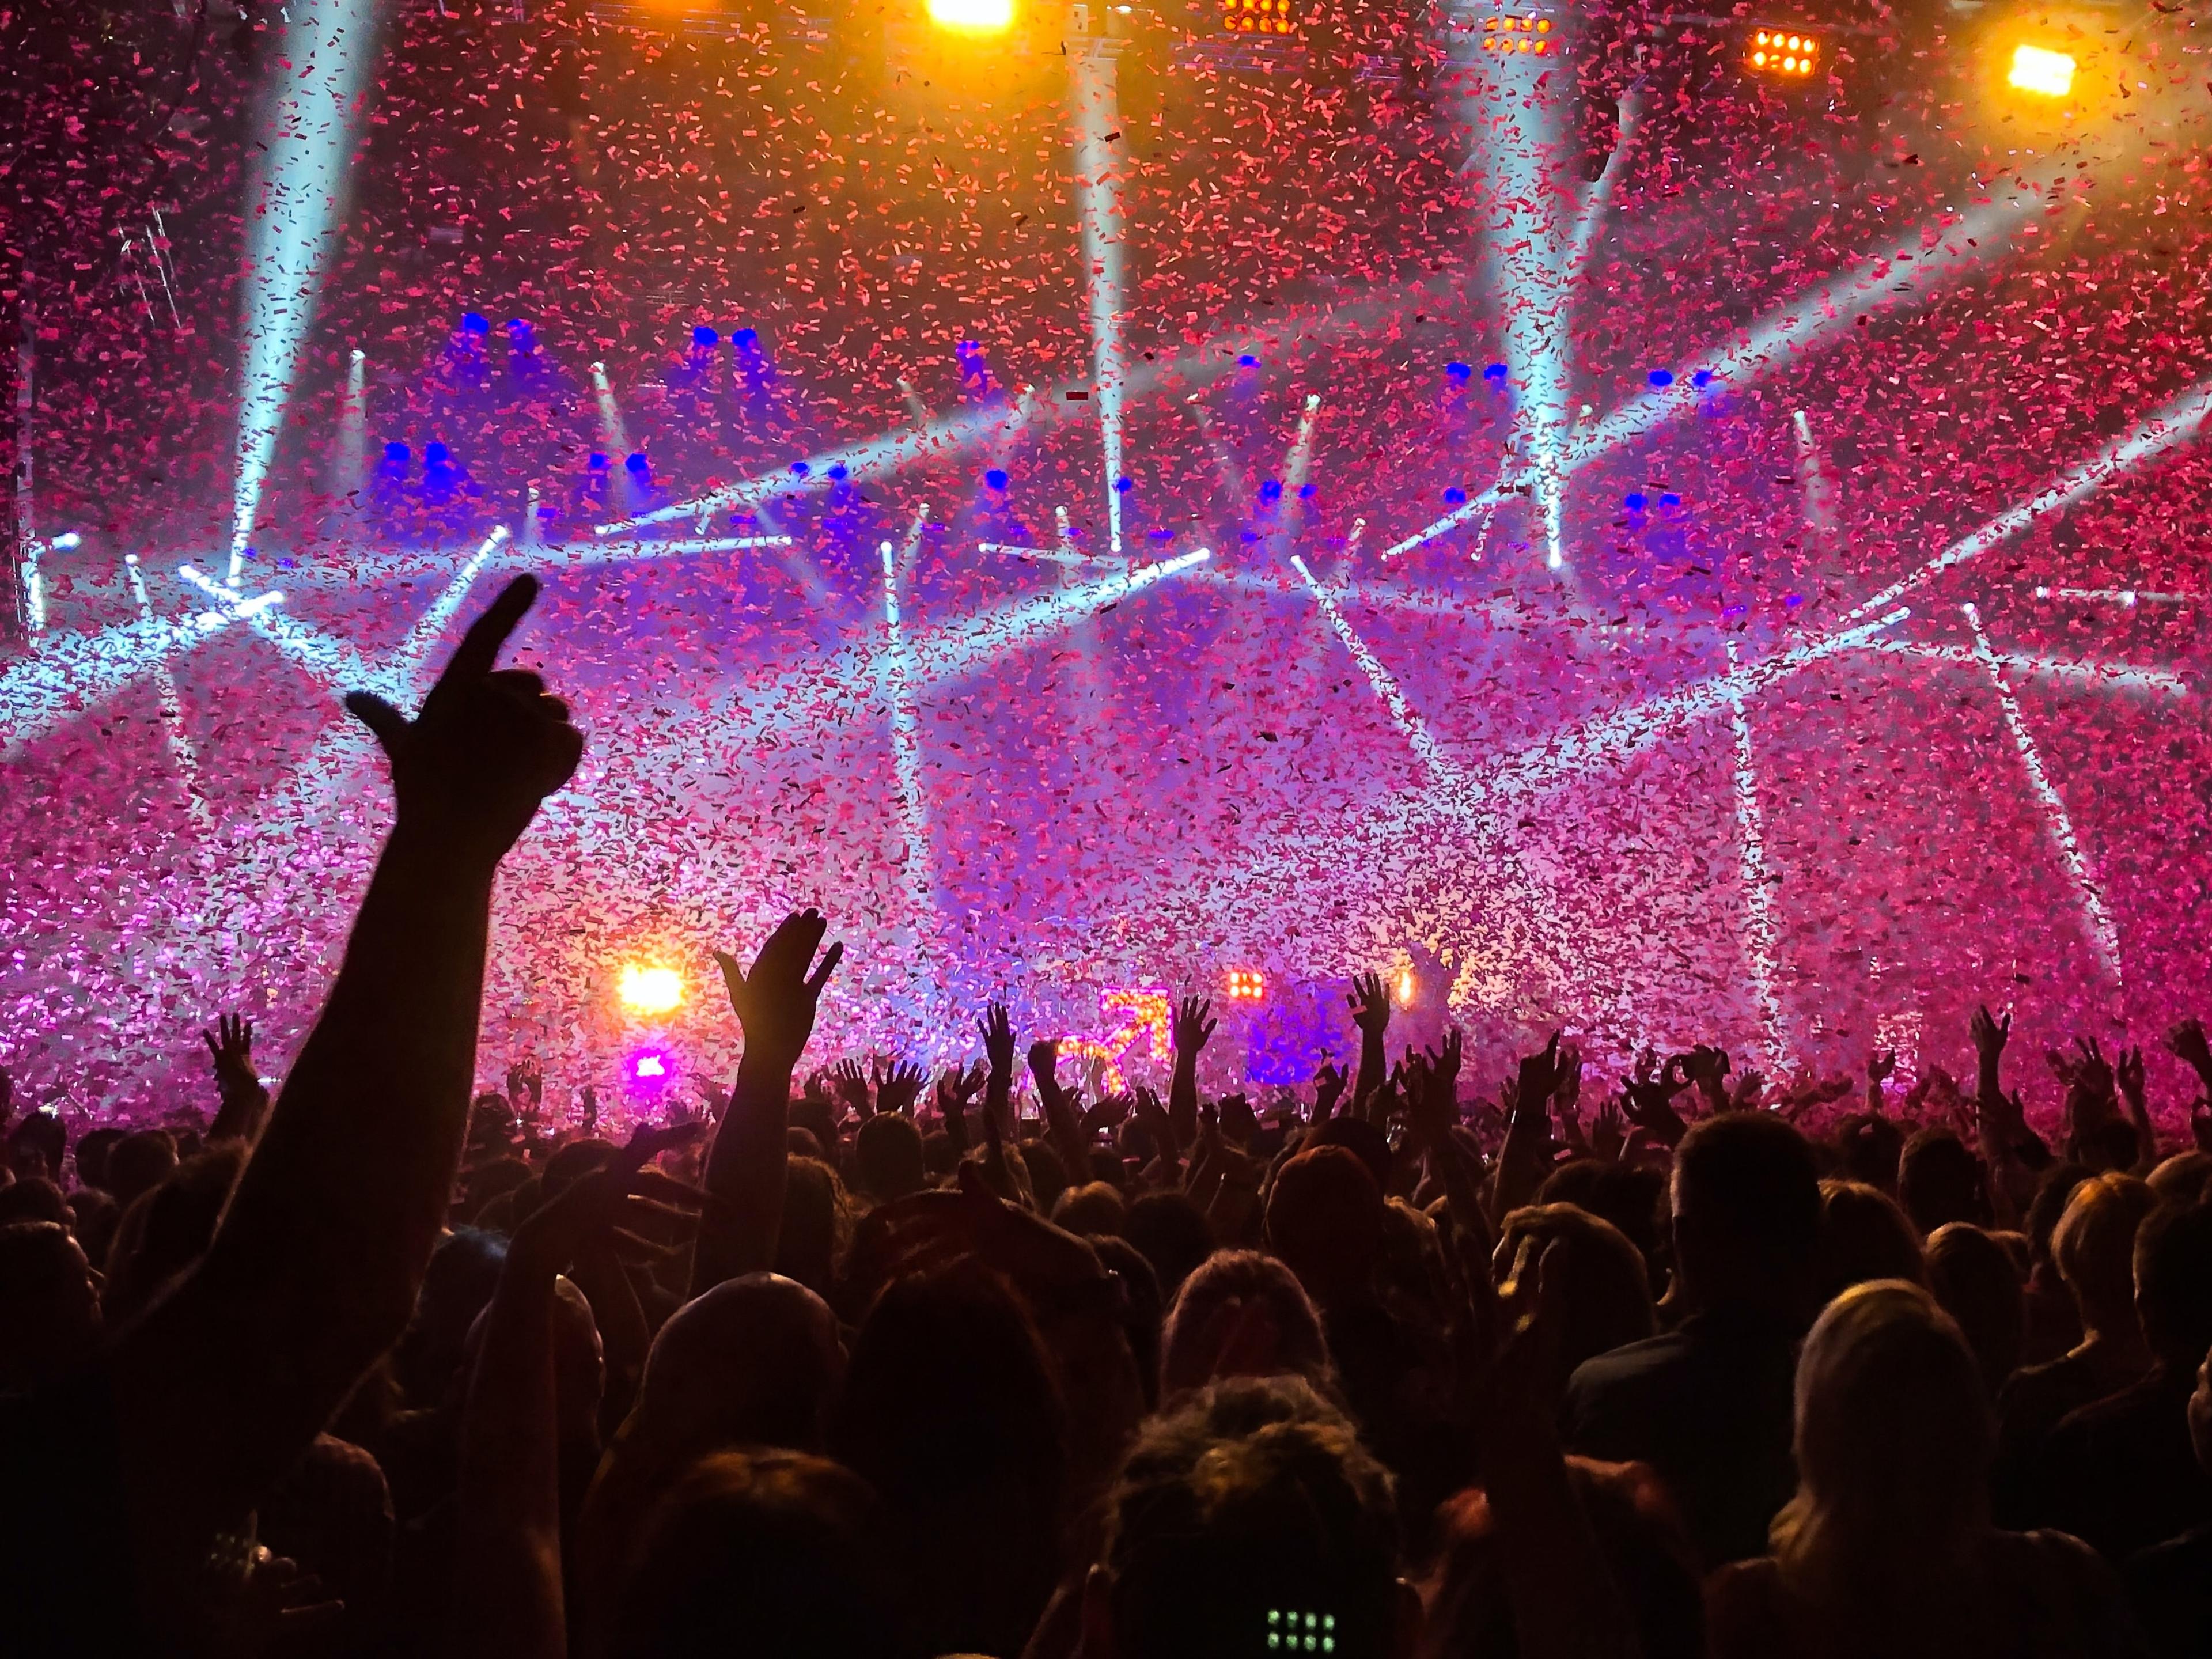 Een foto van een dansende menigte met veel confetti en lasereffecten.